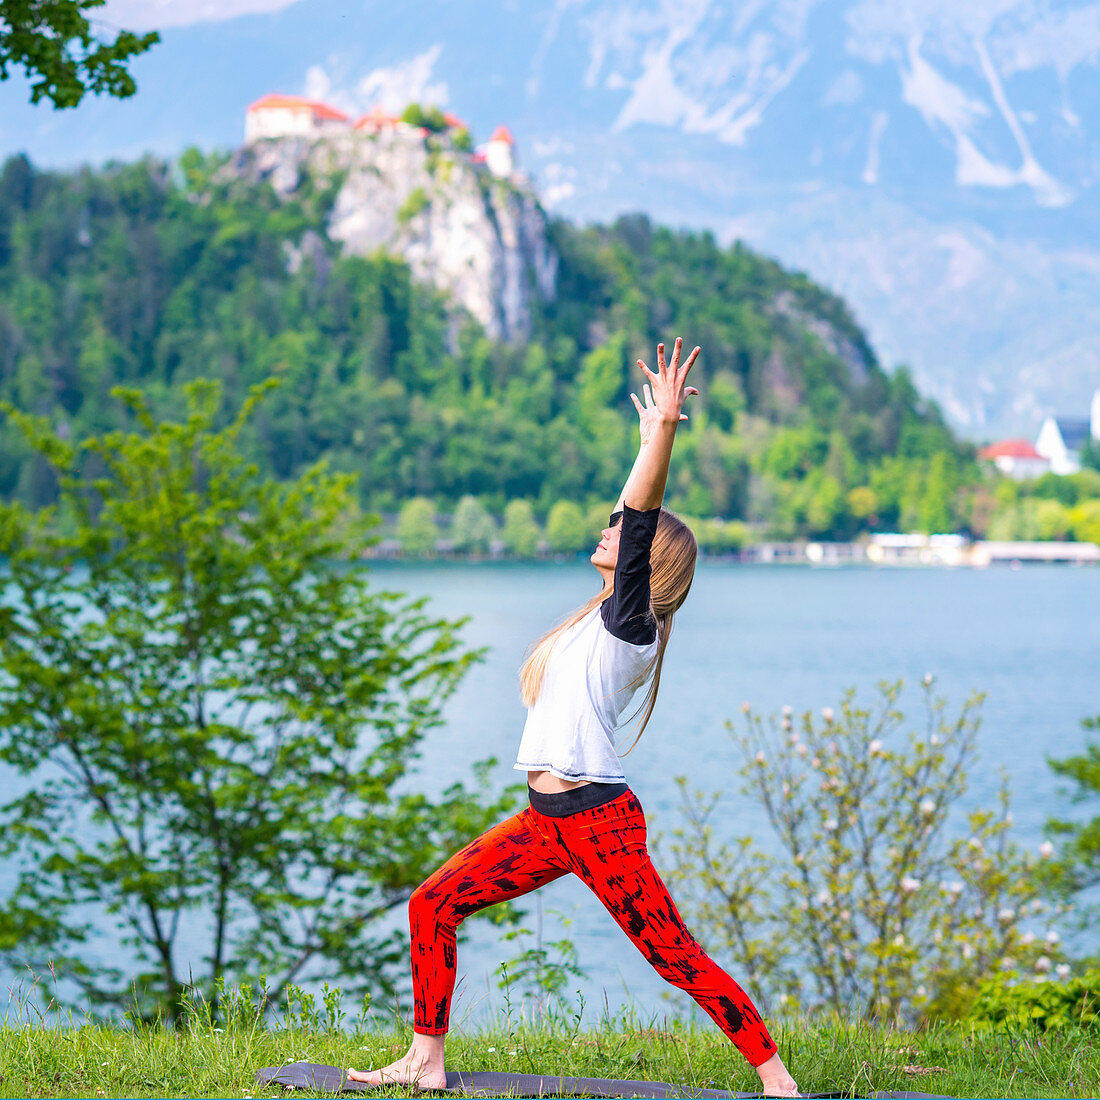 Woman doing yoga by a lake